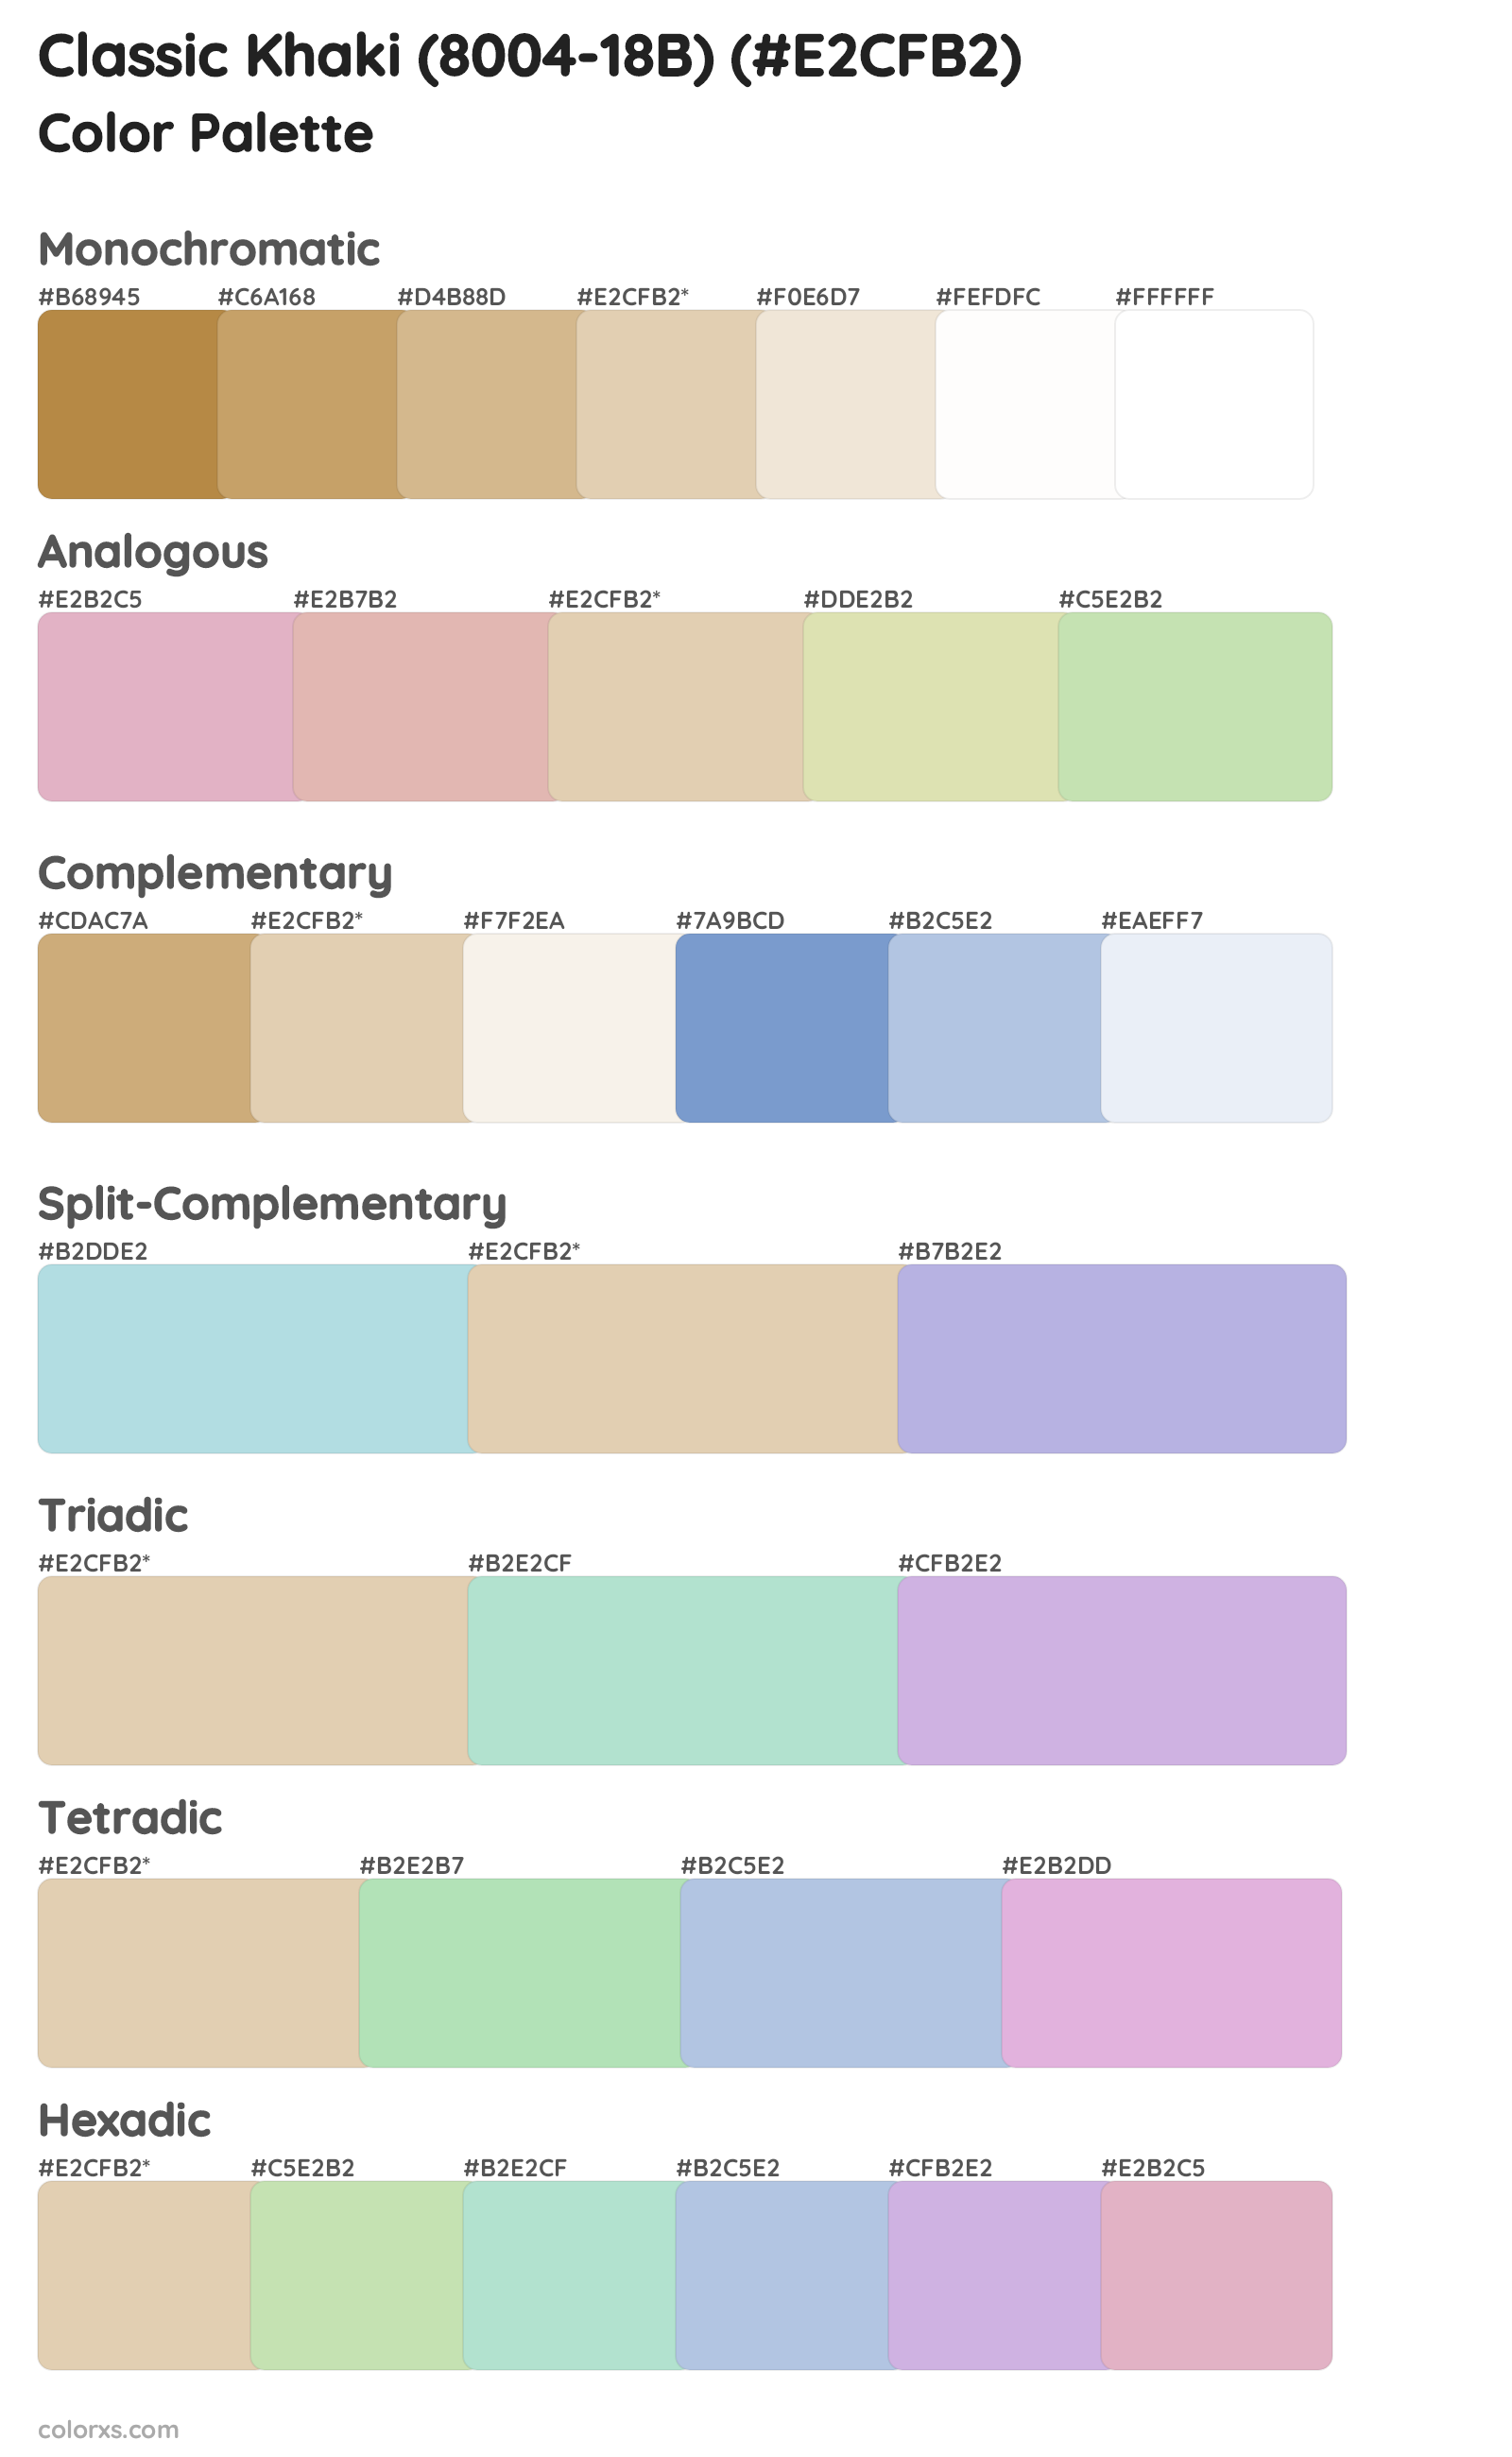 Classic Khaki (8004-18B) Color Scheme Palettes